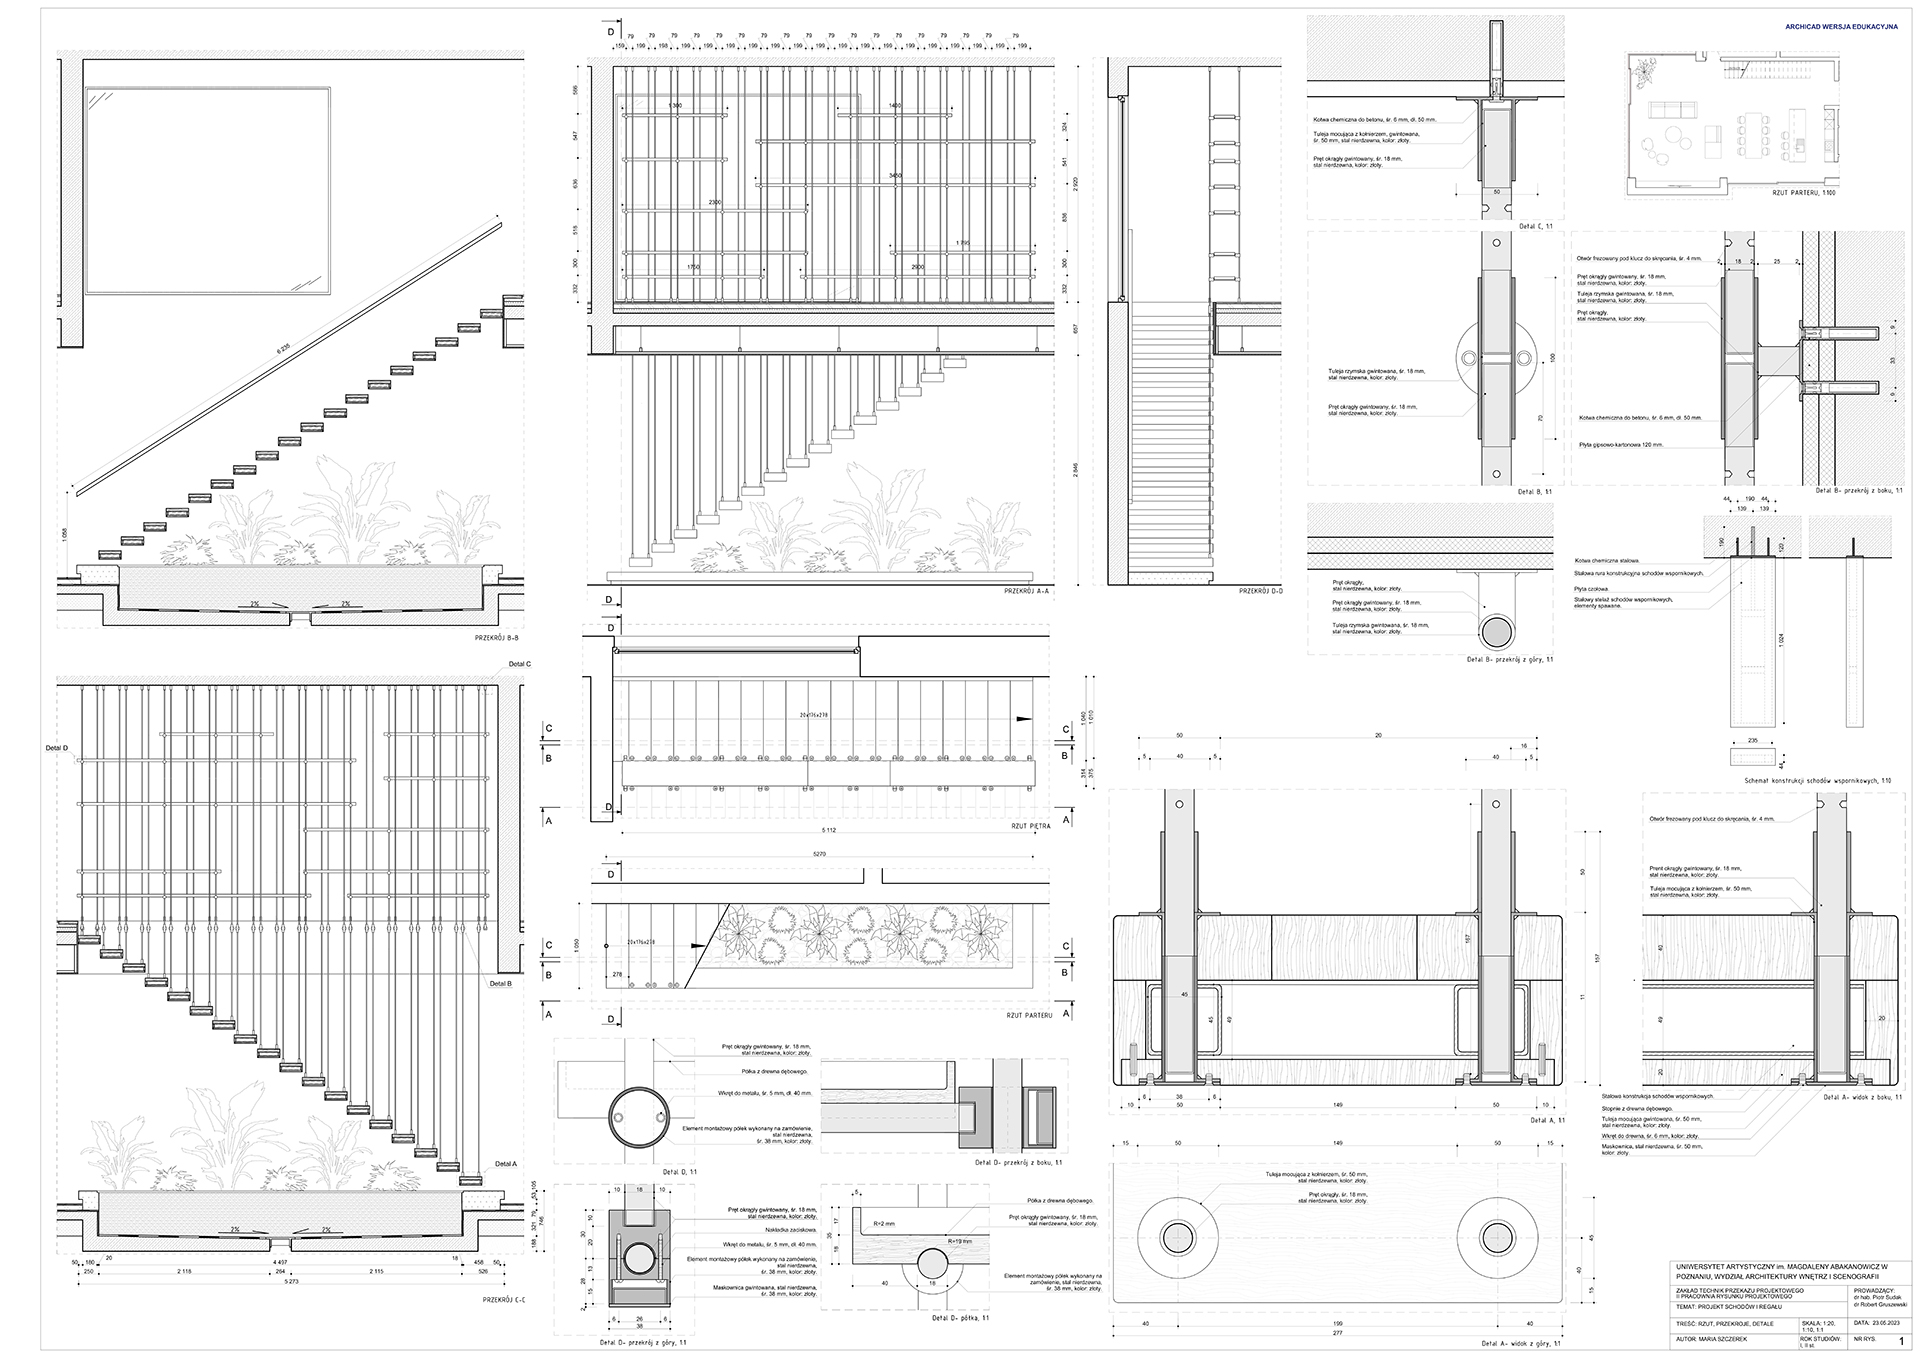 Projekt techniczny schodów i regału opracowany zgodnie z zasadami rysunku projektowego zawierający informacje niezbędne do jego wykonania.